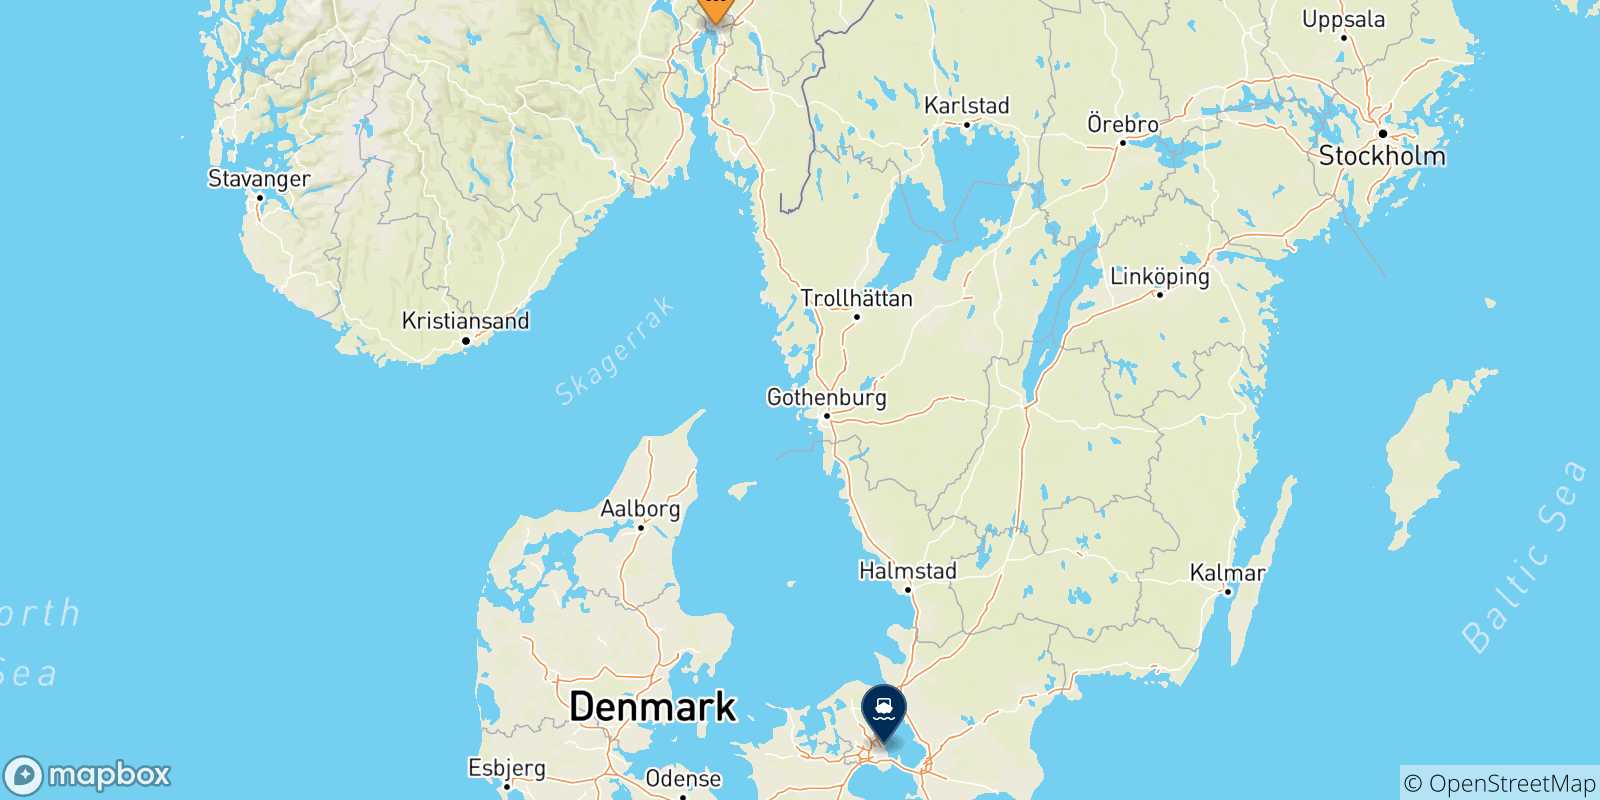 Mappa dei porti collegati con la Danimarca